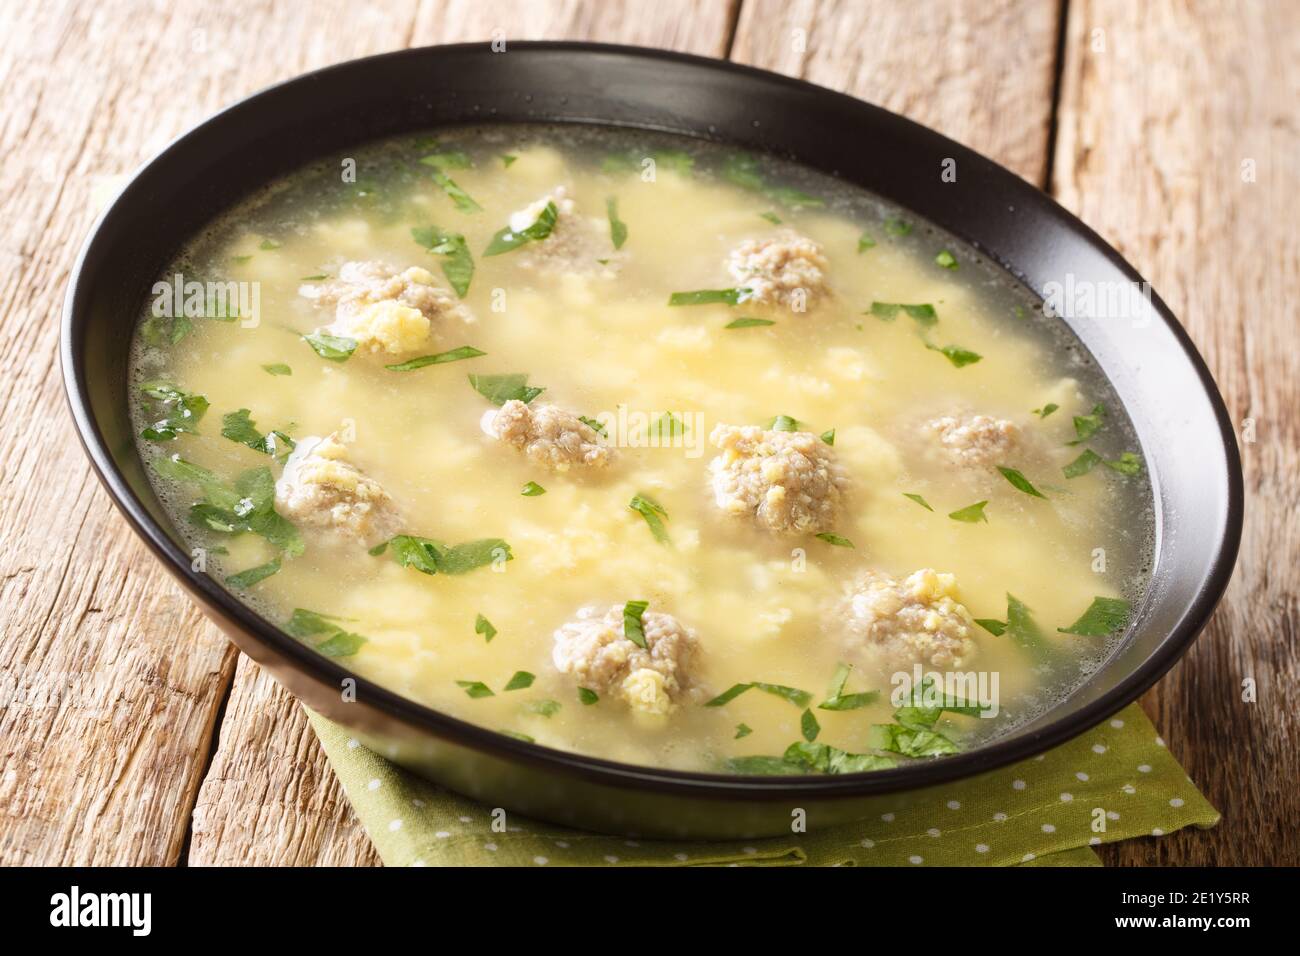 Pasqua festa zuppa italiana con polpette, uova, formaggio primo piano in una ciotola sul tavolo. Orizzontale Foto Stock